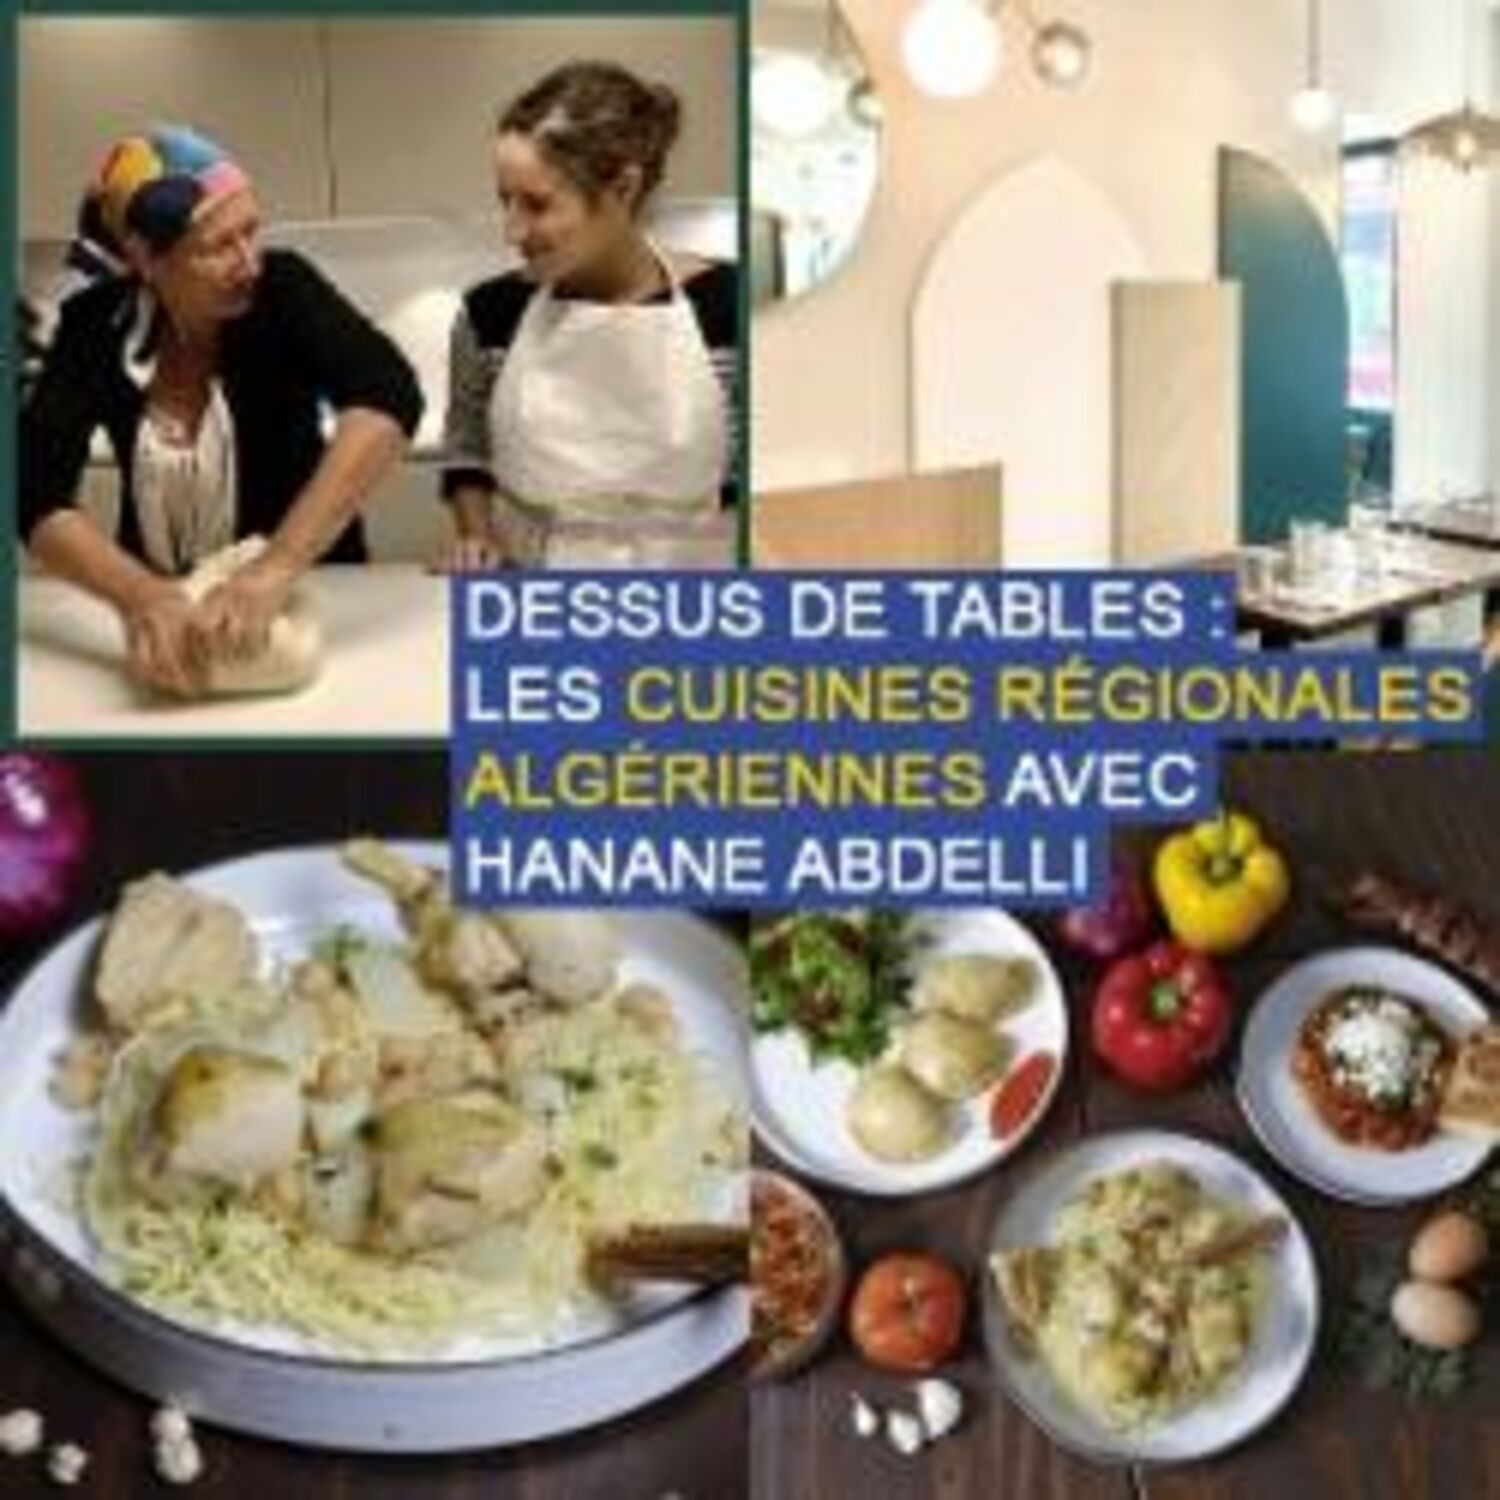 Dessus de tables du 26-09-2020 : Les cuisines régionales algériennes